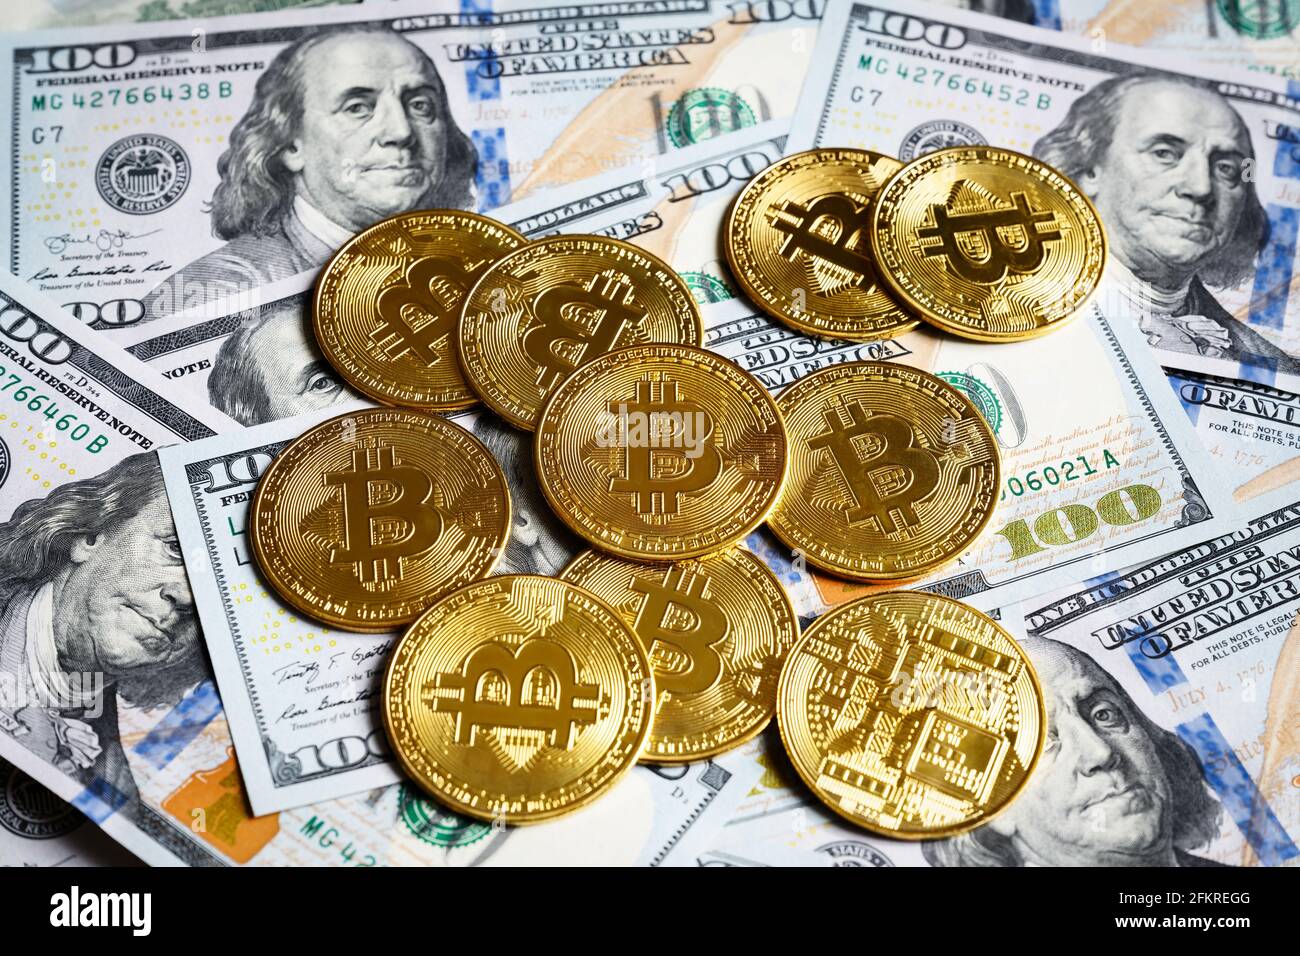 Bittcoin e dollari USA, moneta digitale criptovaluta bitcoin e banconote. Pila di monete d'oro bit sullo sfondo delle banconote del dollaro. Concetto di "Mone virtuale" Foto Stock